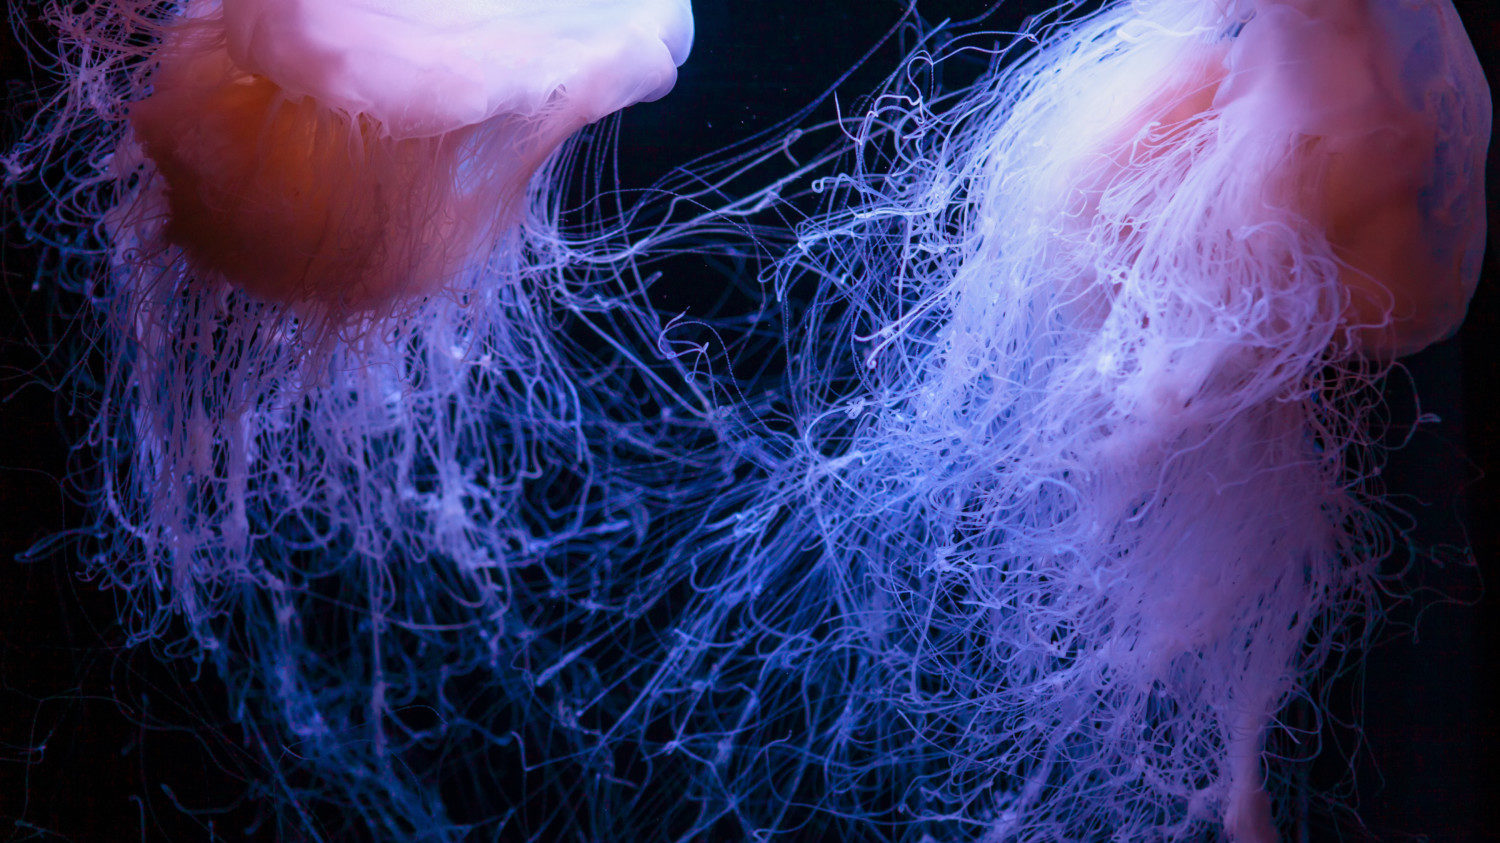 Drymonema "pink meanie" jellyfish